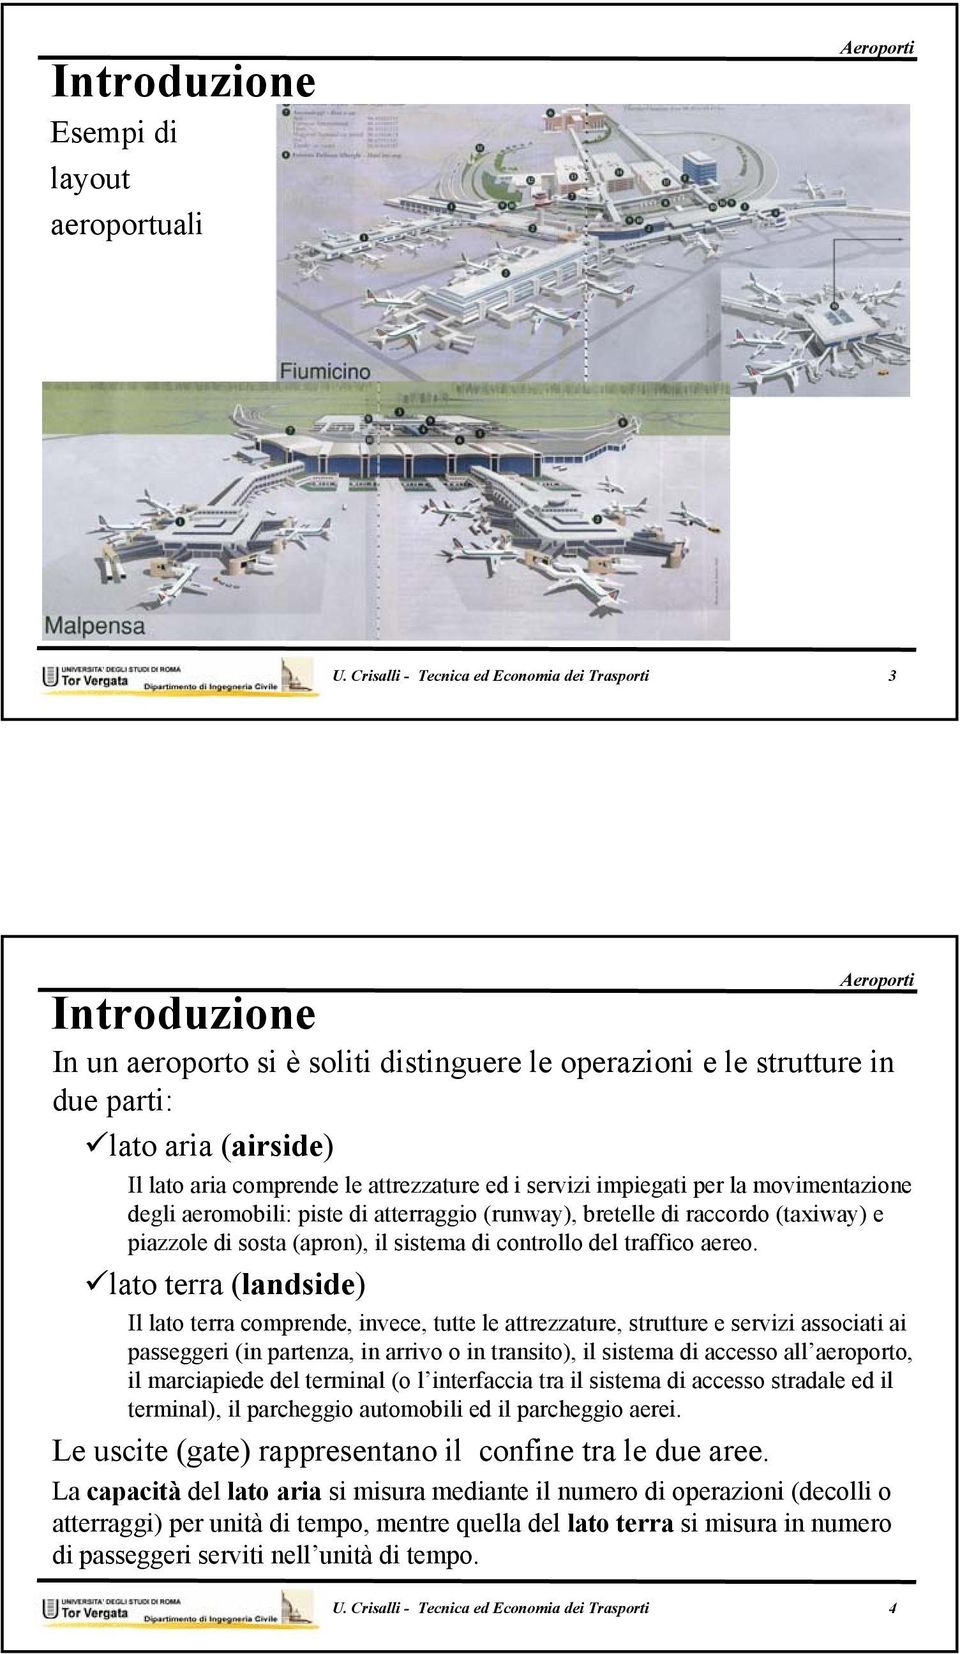 attrezzature ed i servizi impiegati per la movimentazione degli aeromobili: piste di atterraggio (runway), bretelle di raccordo (taxiway) e piazzole di sosta (apron), il sistema di controllo del